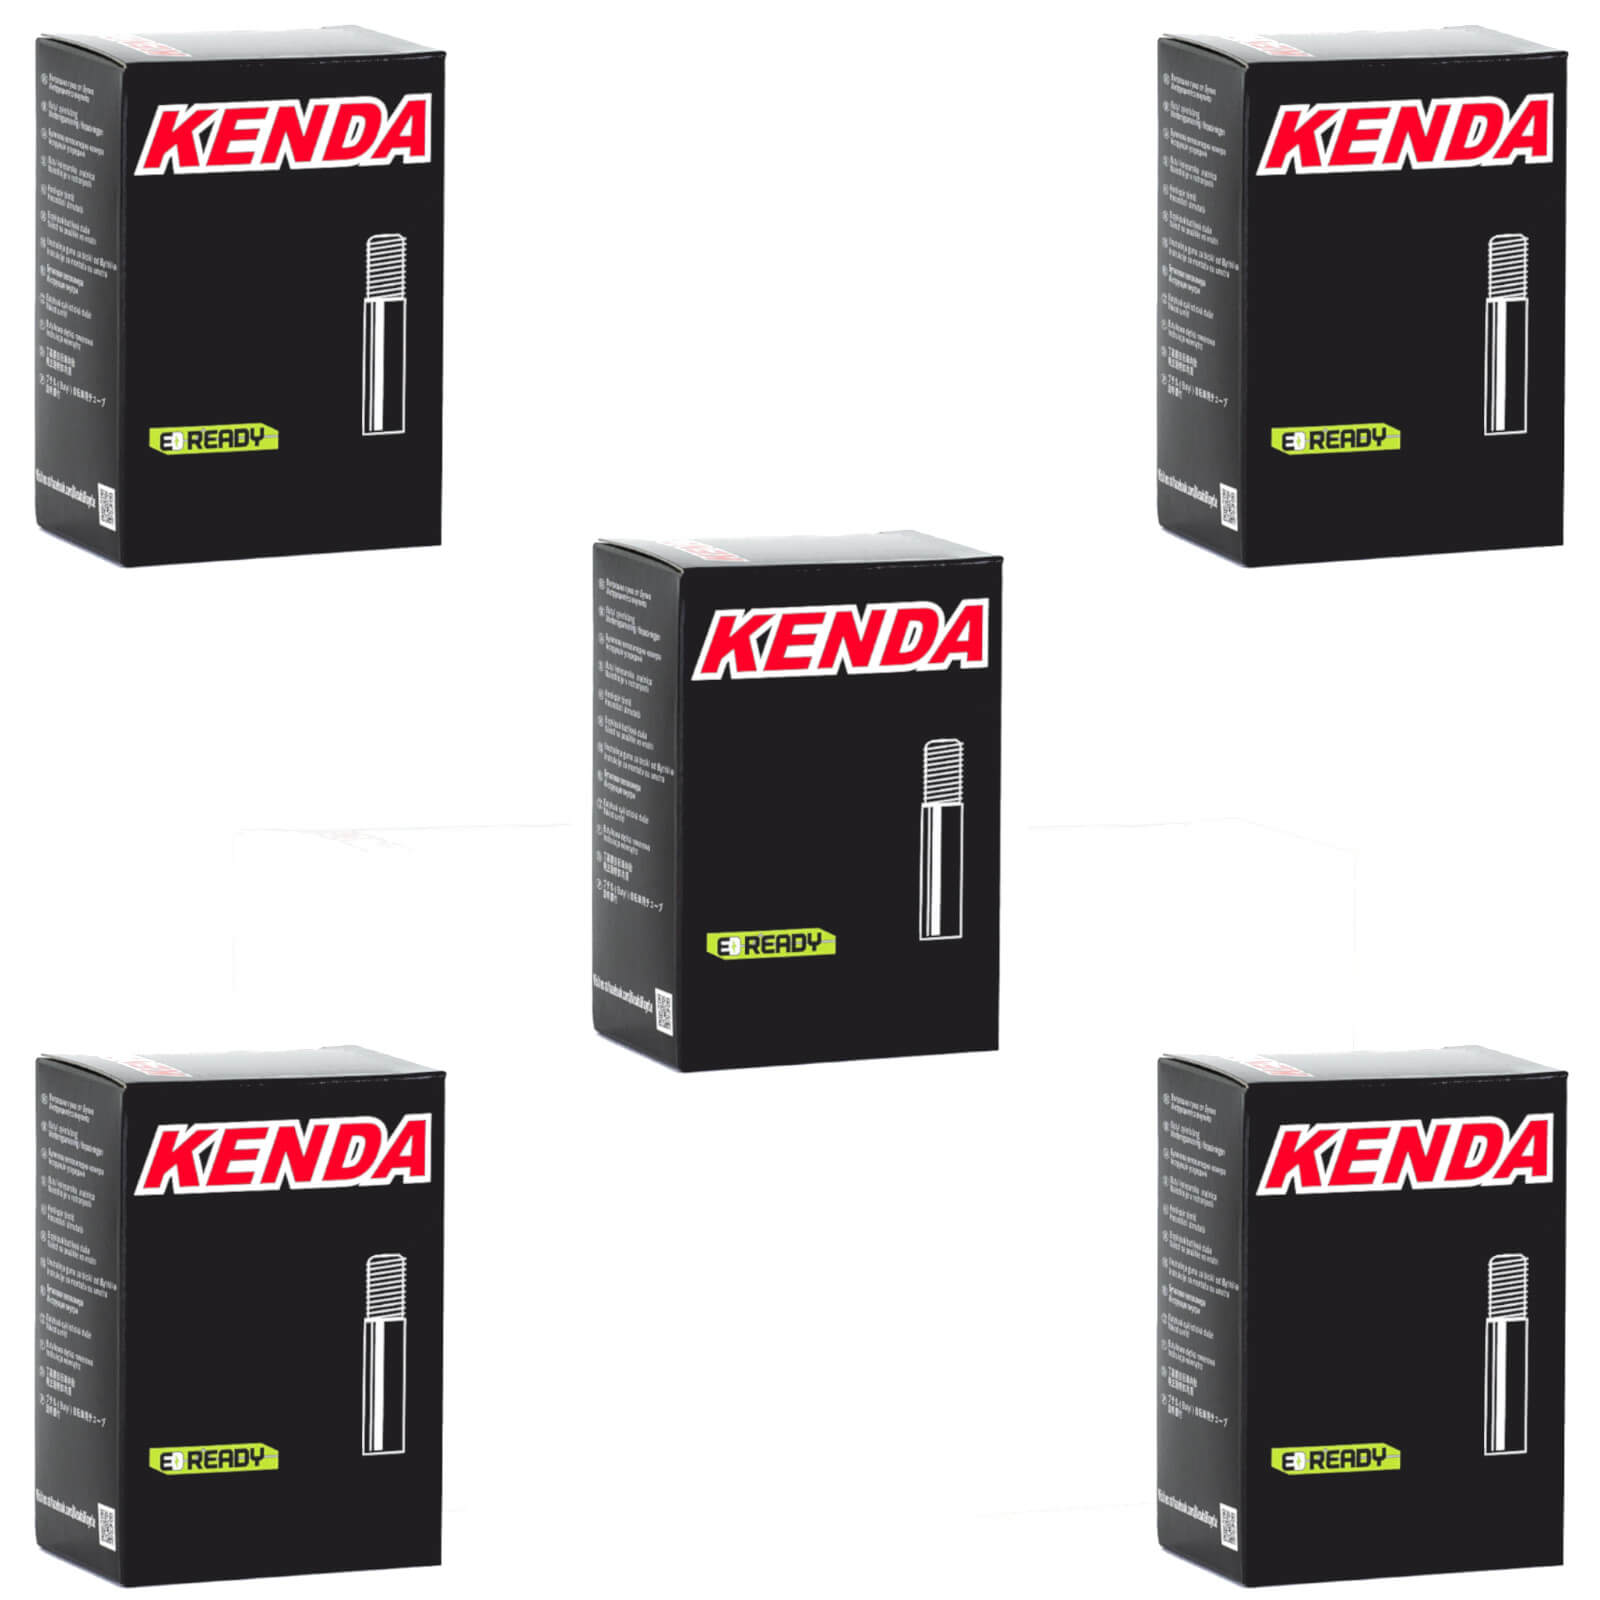 Kenda 20x1-1/8"-1-3/8"" 20 Inch Schrader Valve Bike Inner Tube Pack of 5